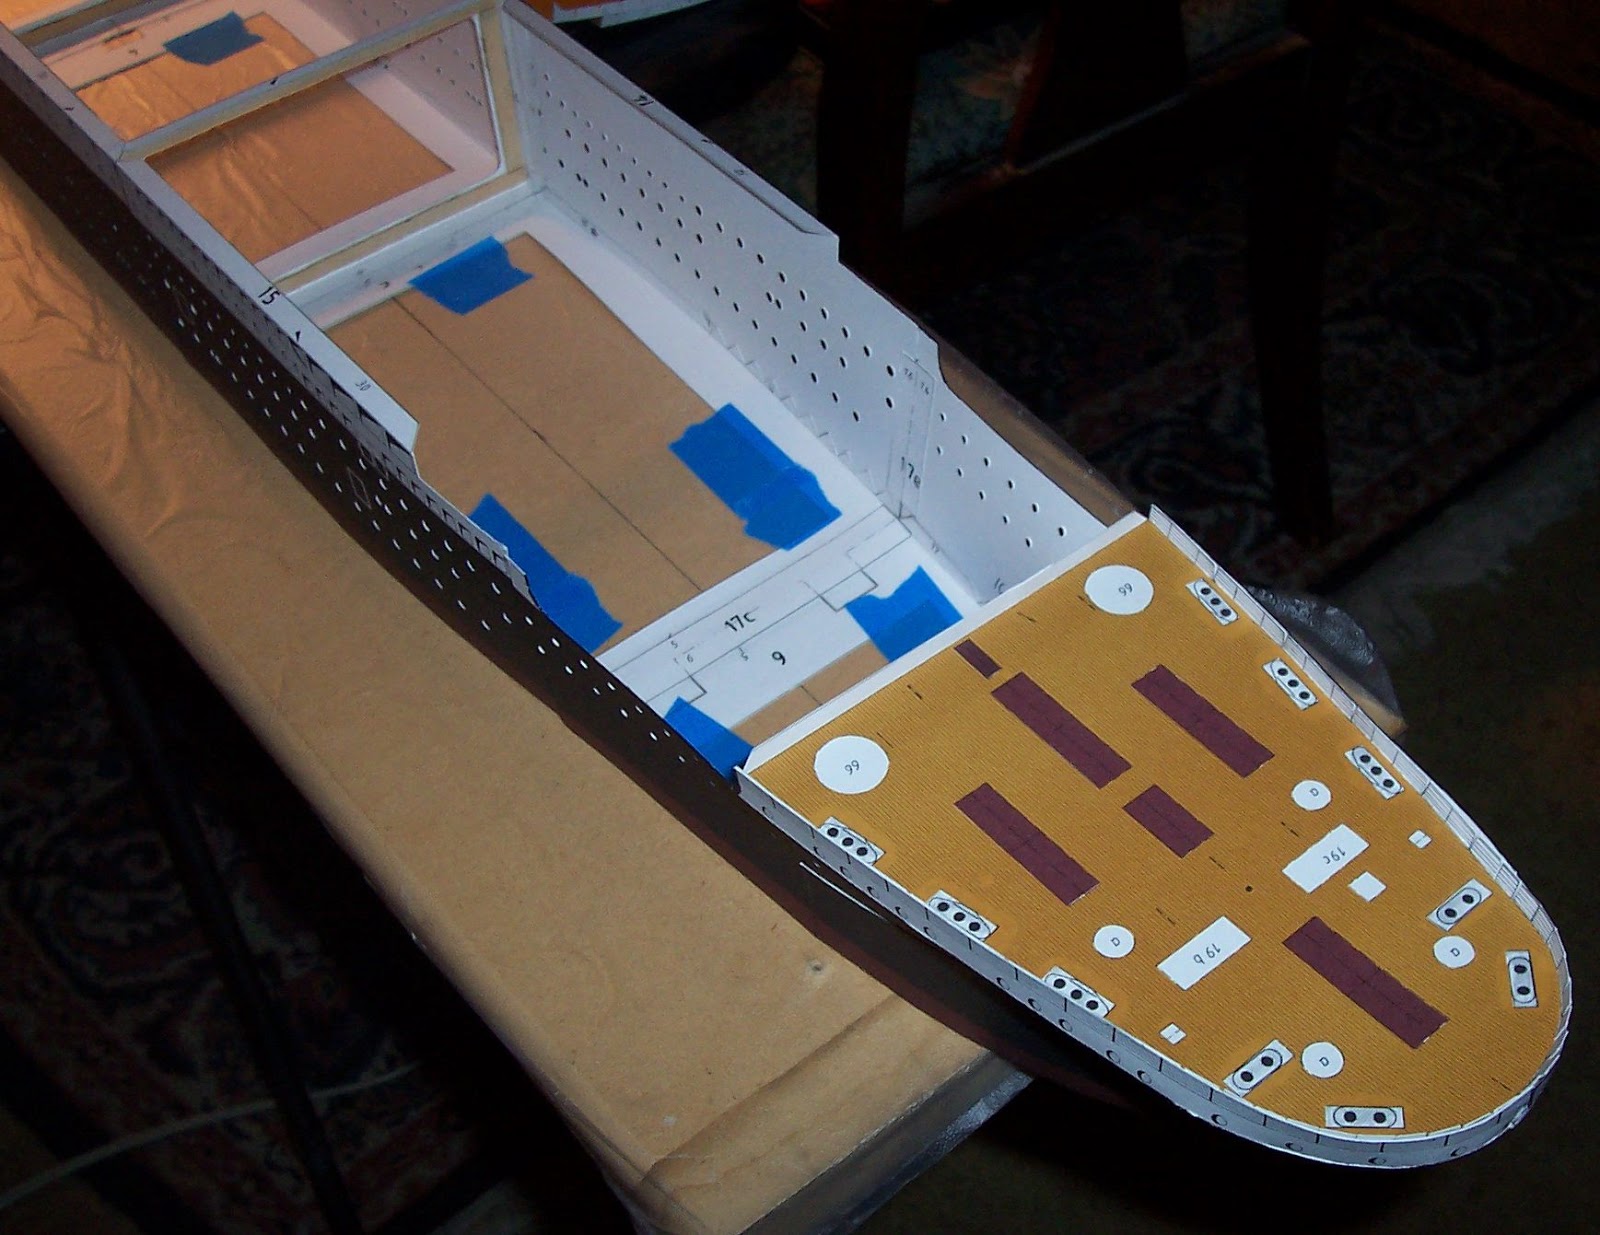 TITANIC" - Cardboard Model Build | Mark V. Trappett's Blog